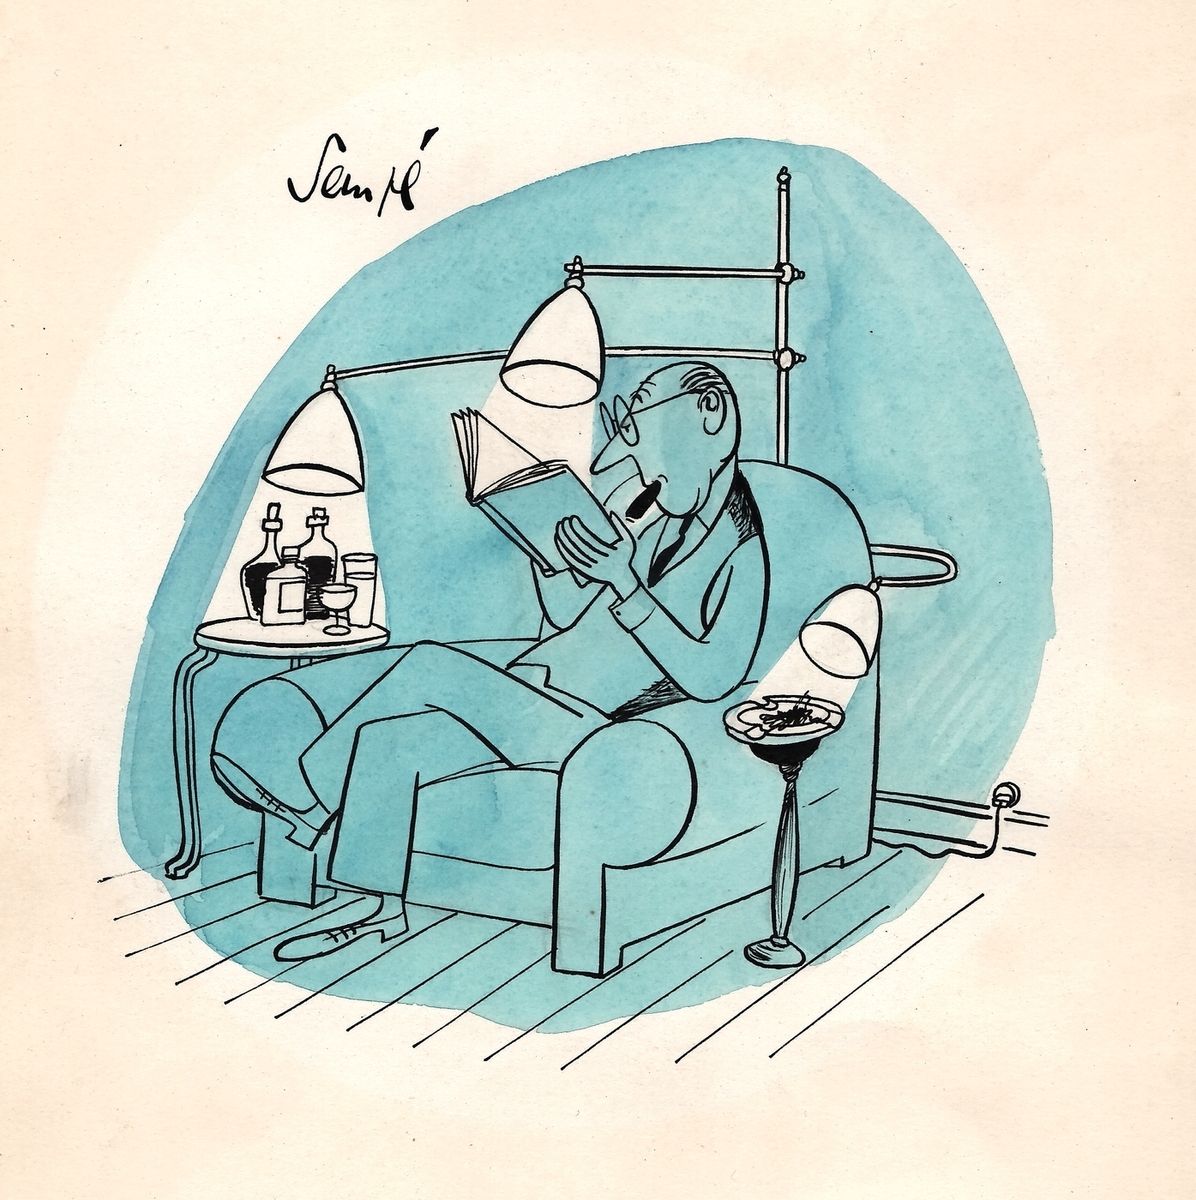 Ilustración en tinta china y acuarela azul sobre papel de dibujo que  representa a un hombre sentado y leyendo un libro. El artista impone su  estilo gráfico, que es a la vez